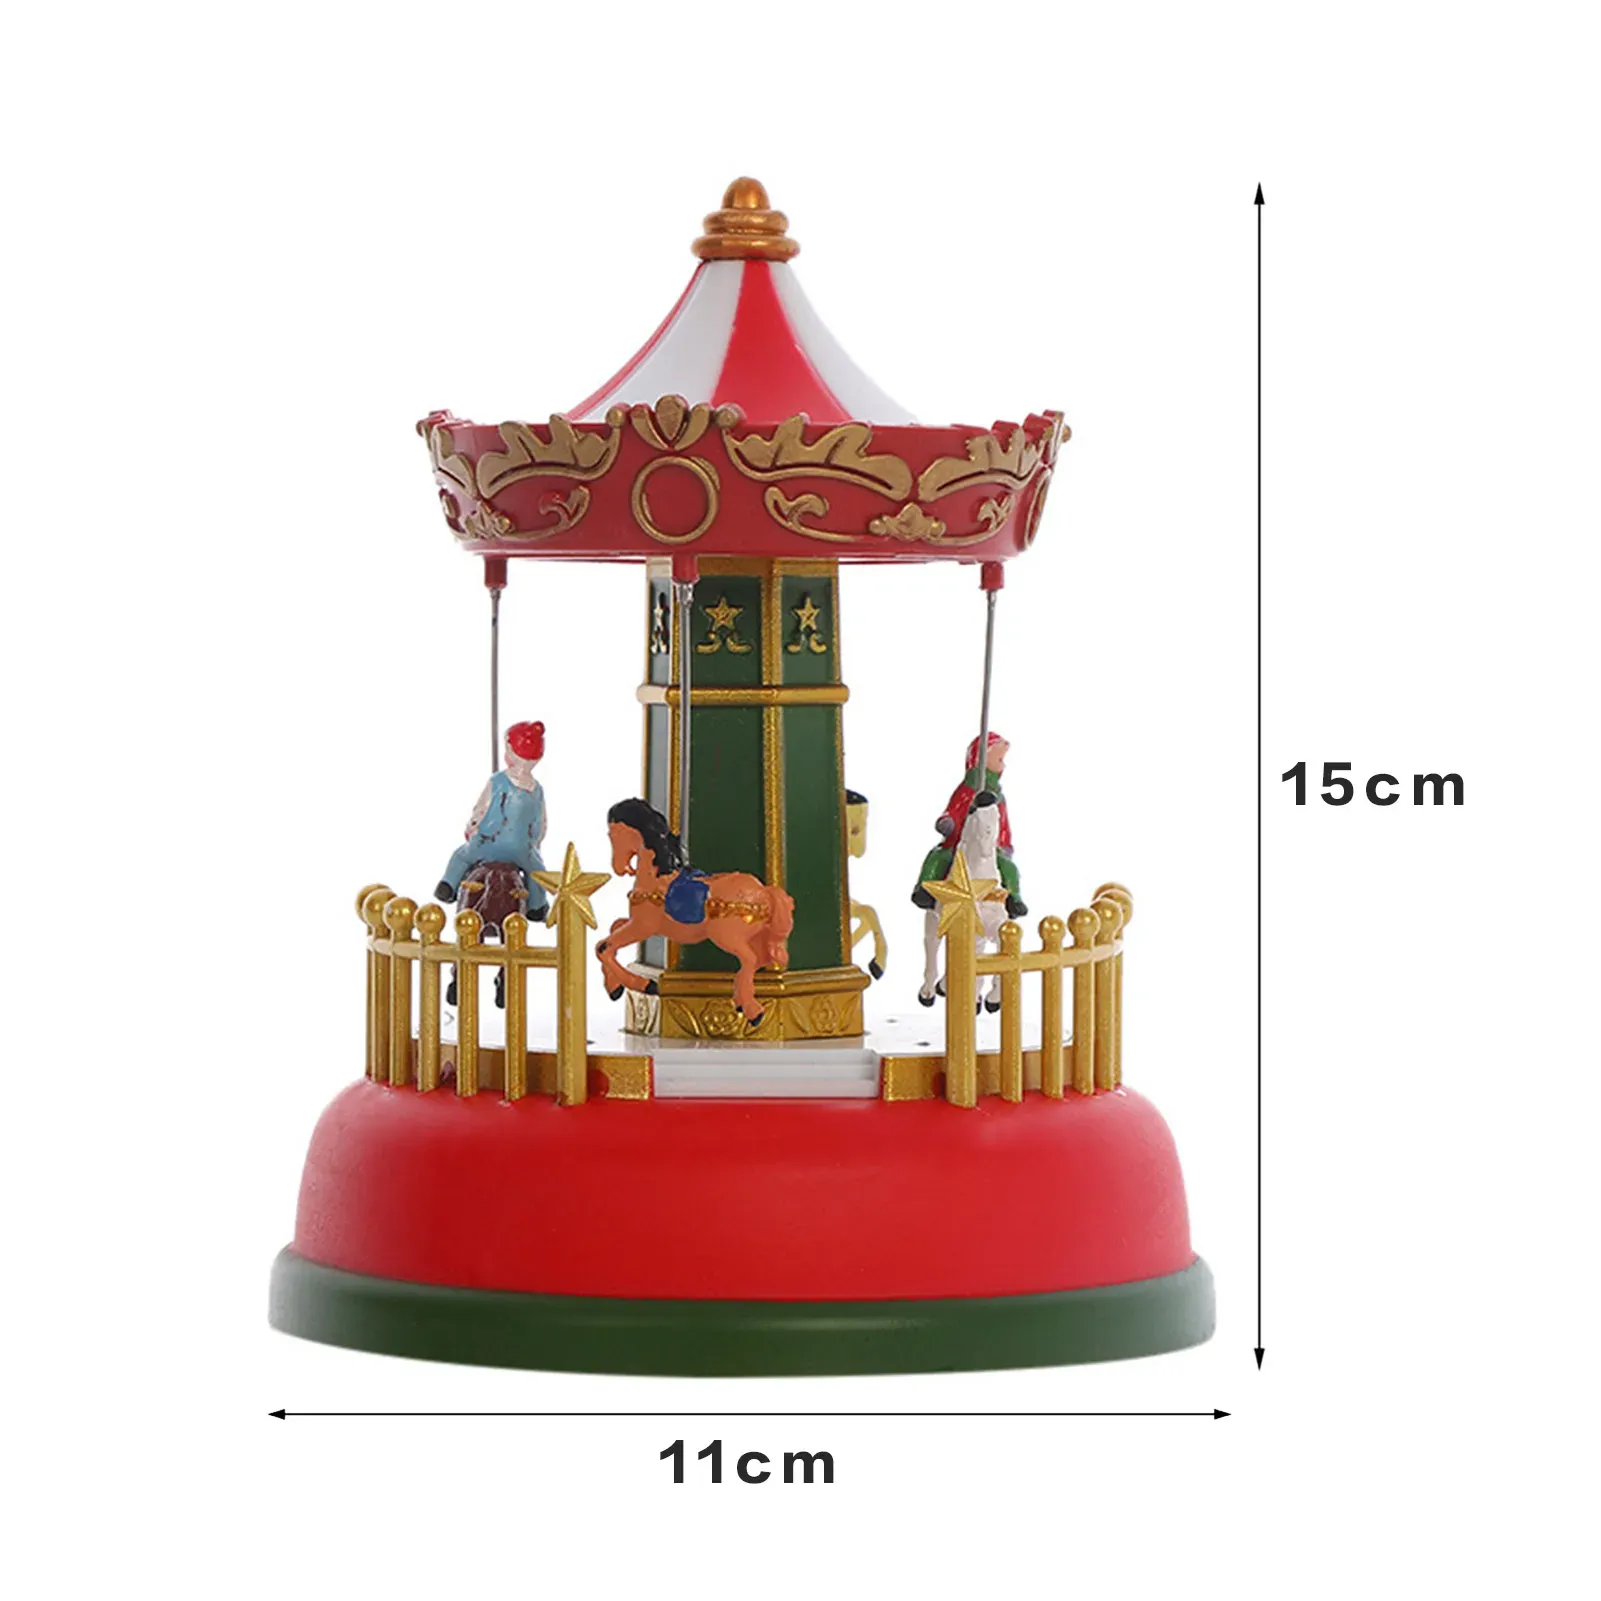 Pudełka Śliczne oświetlenie Boże Narodzenie Dekoracja Karuzela Świeże muzyka karuzeli Ferris Wheel Prezent na bożonarodzeniowe zapasy dekoracji